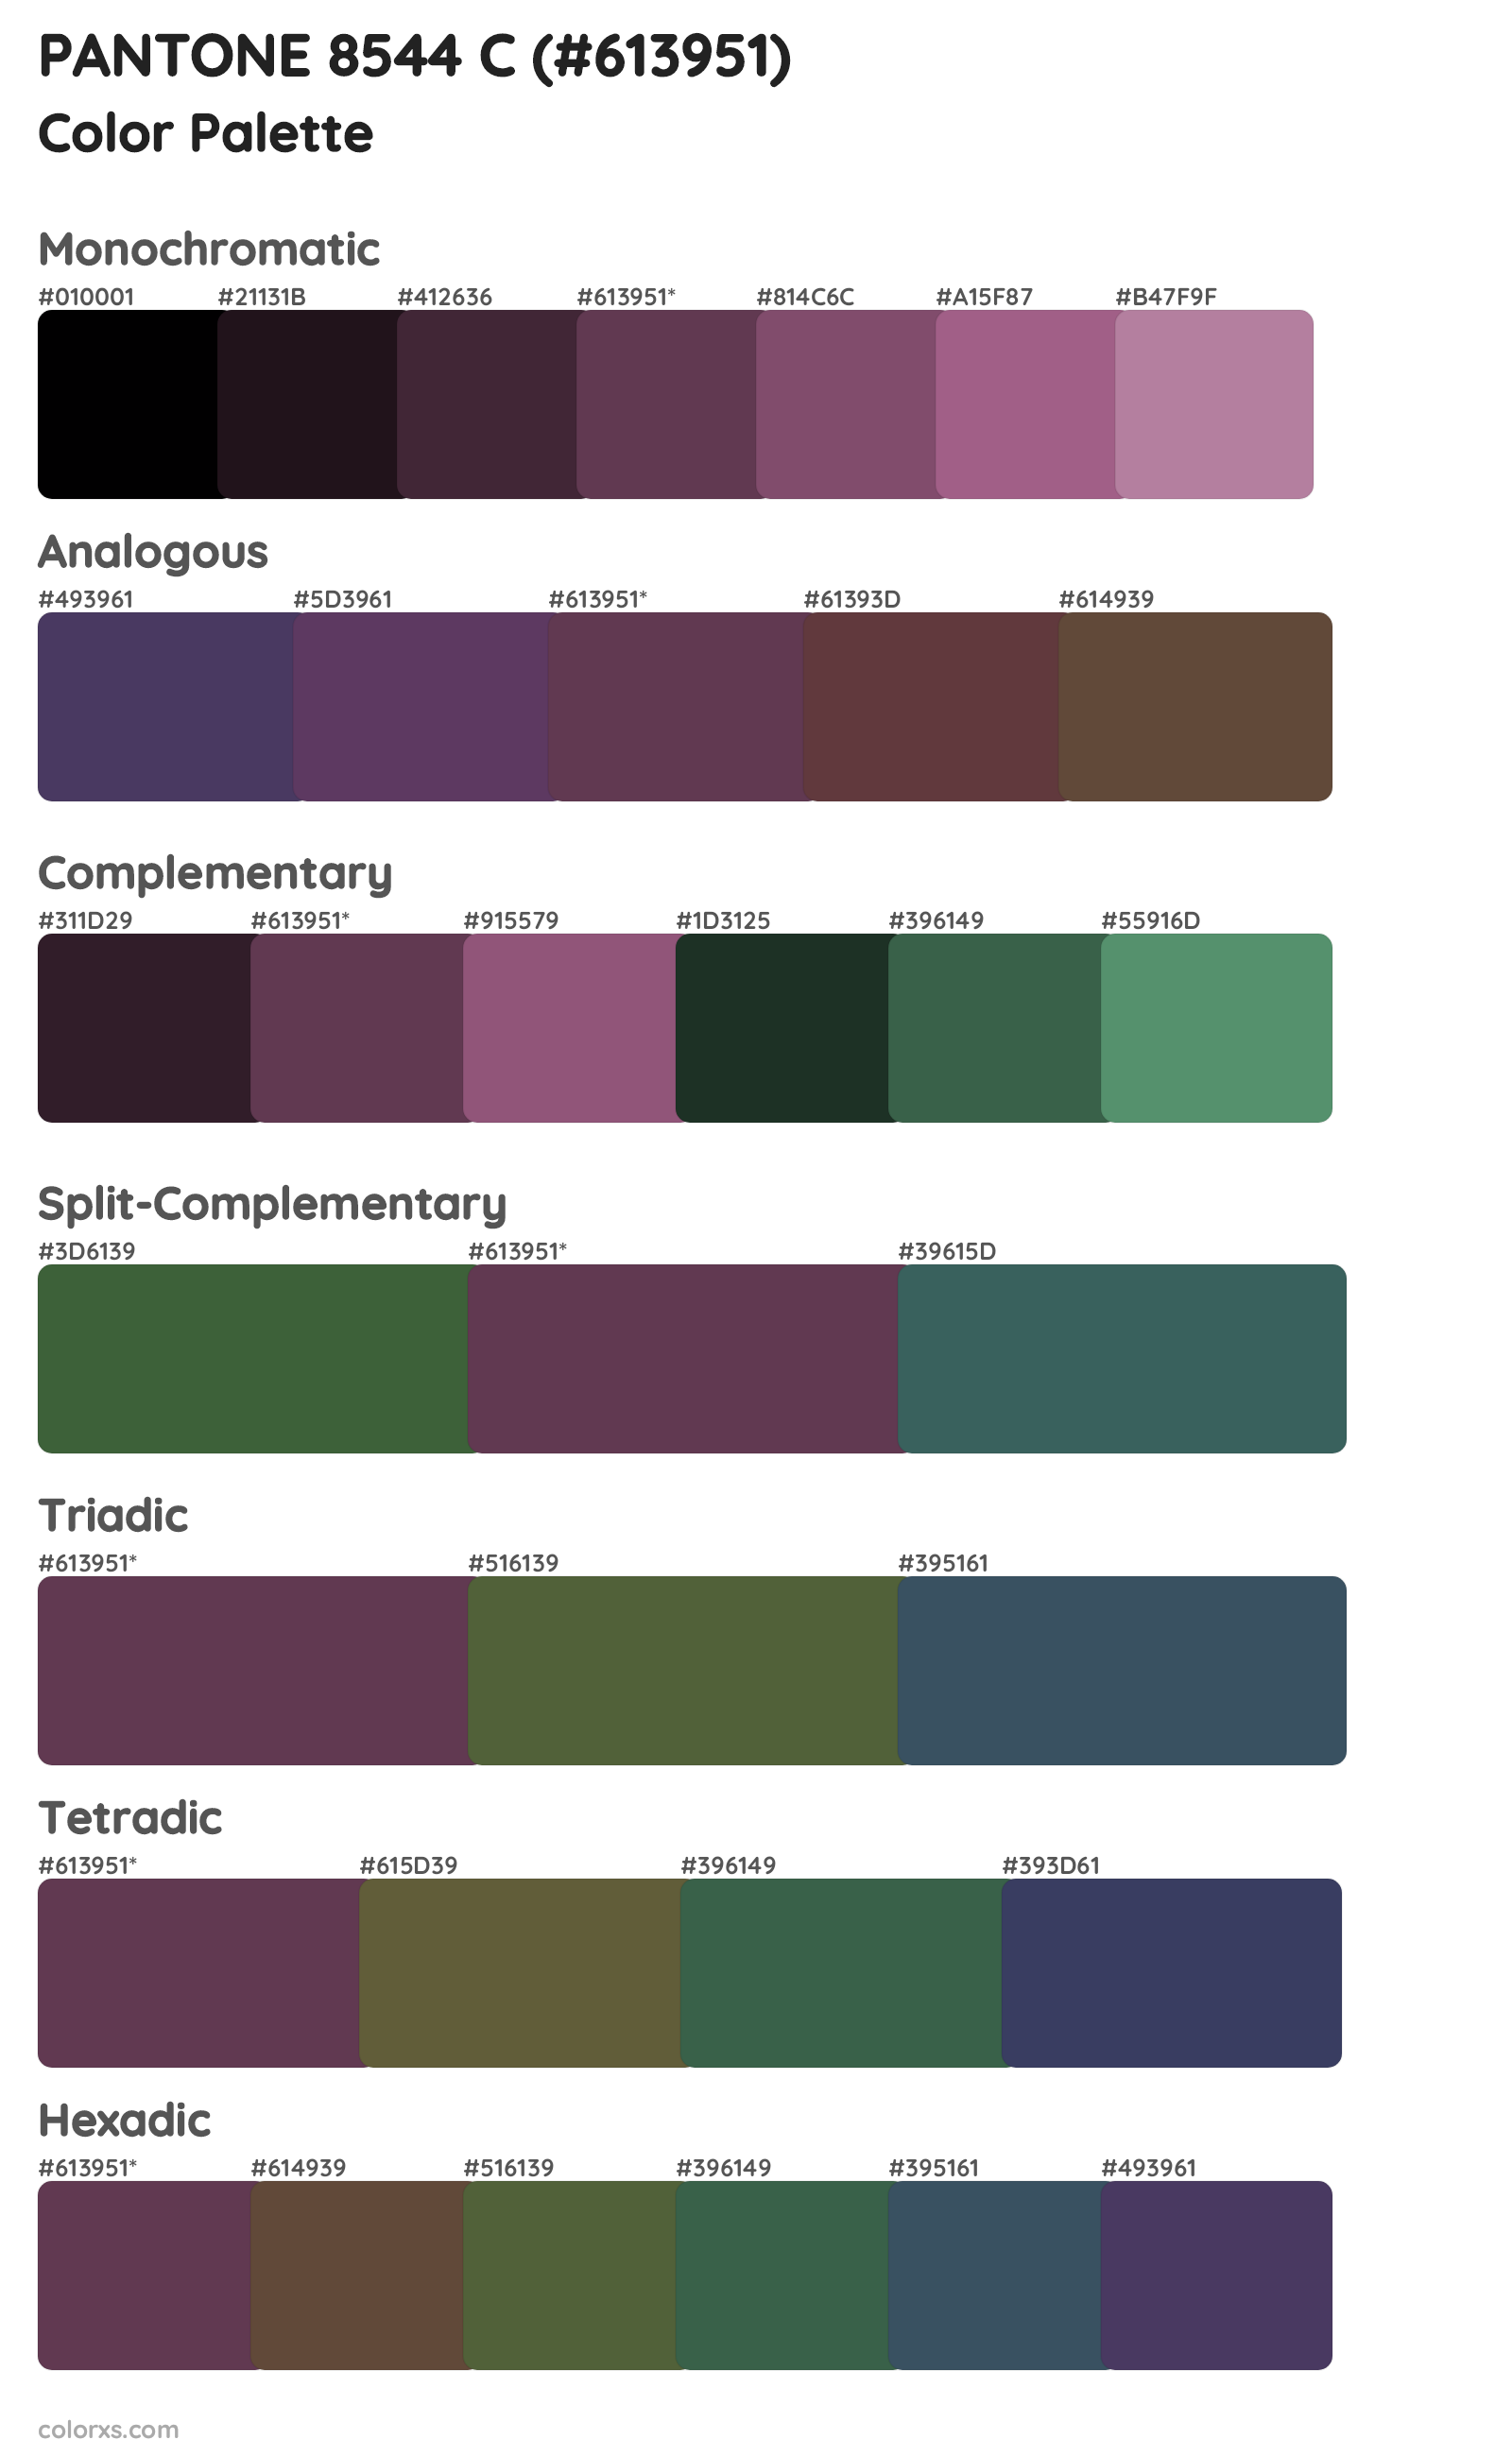 PANTONE 8544 C Color Scheme Palettes